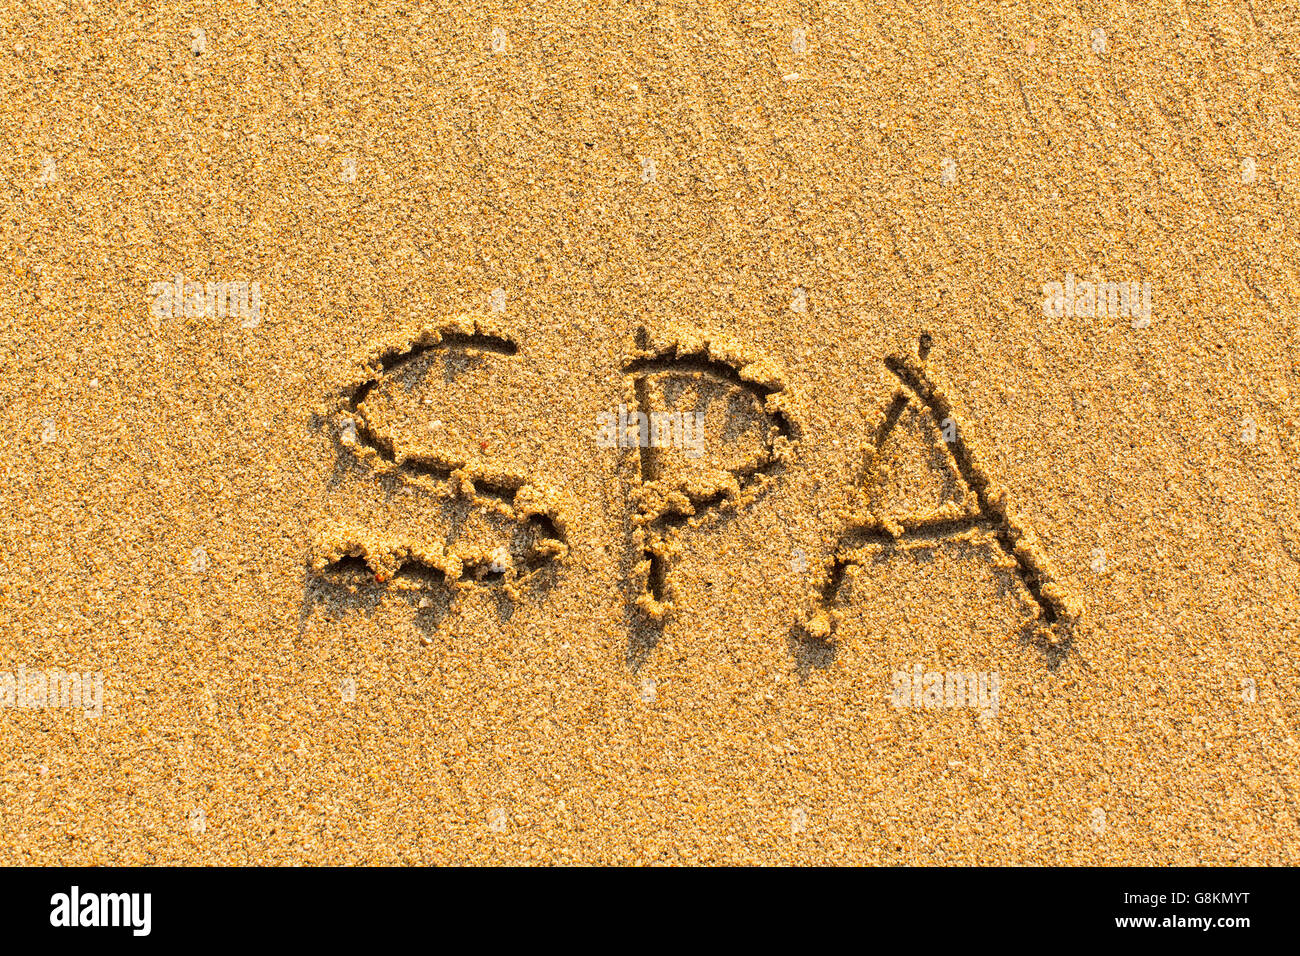 SPA - Wort gezeichnet am Sandstrand. Stockfoto